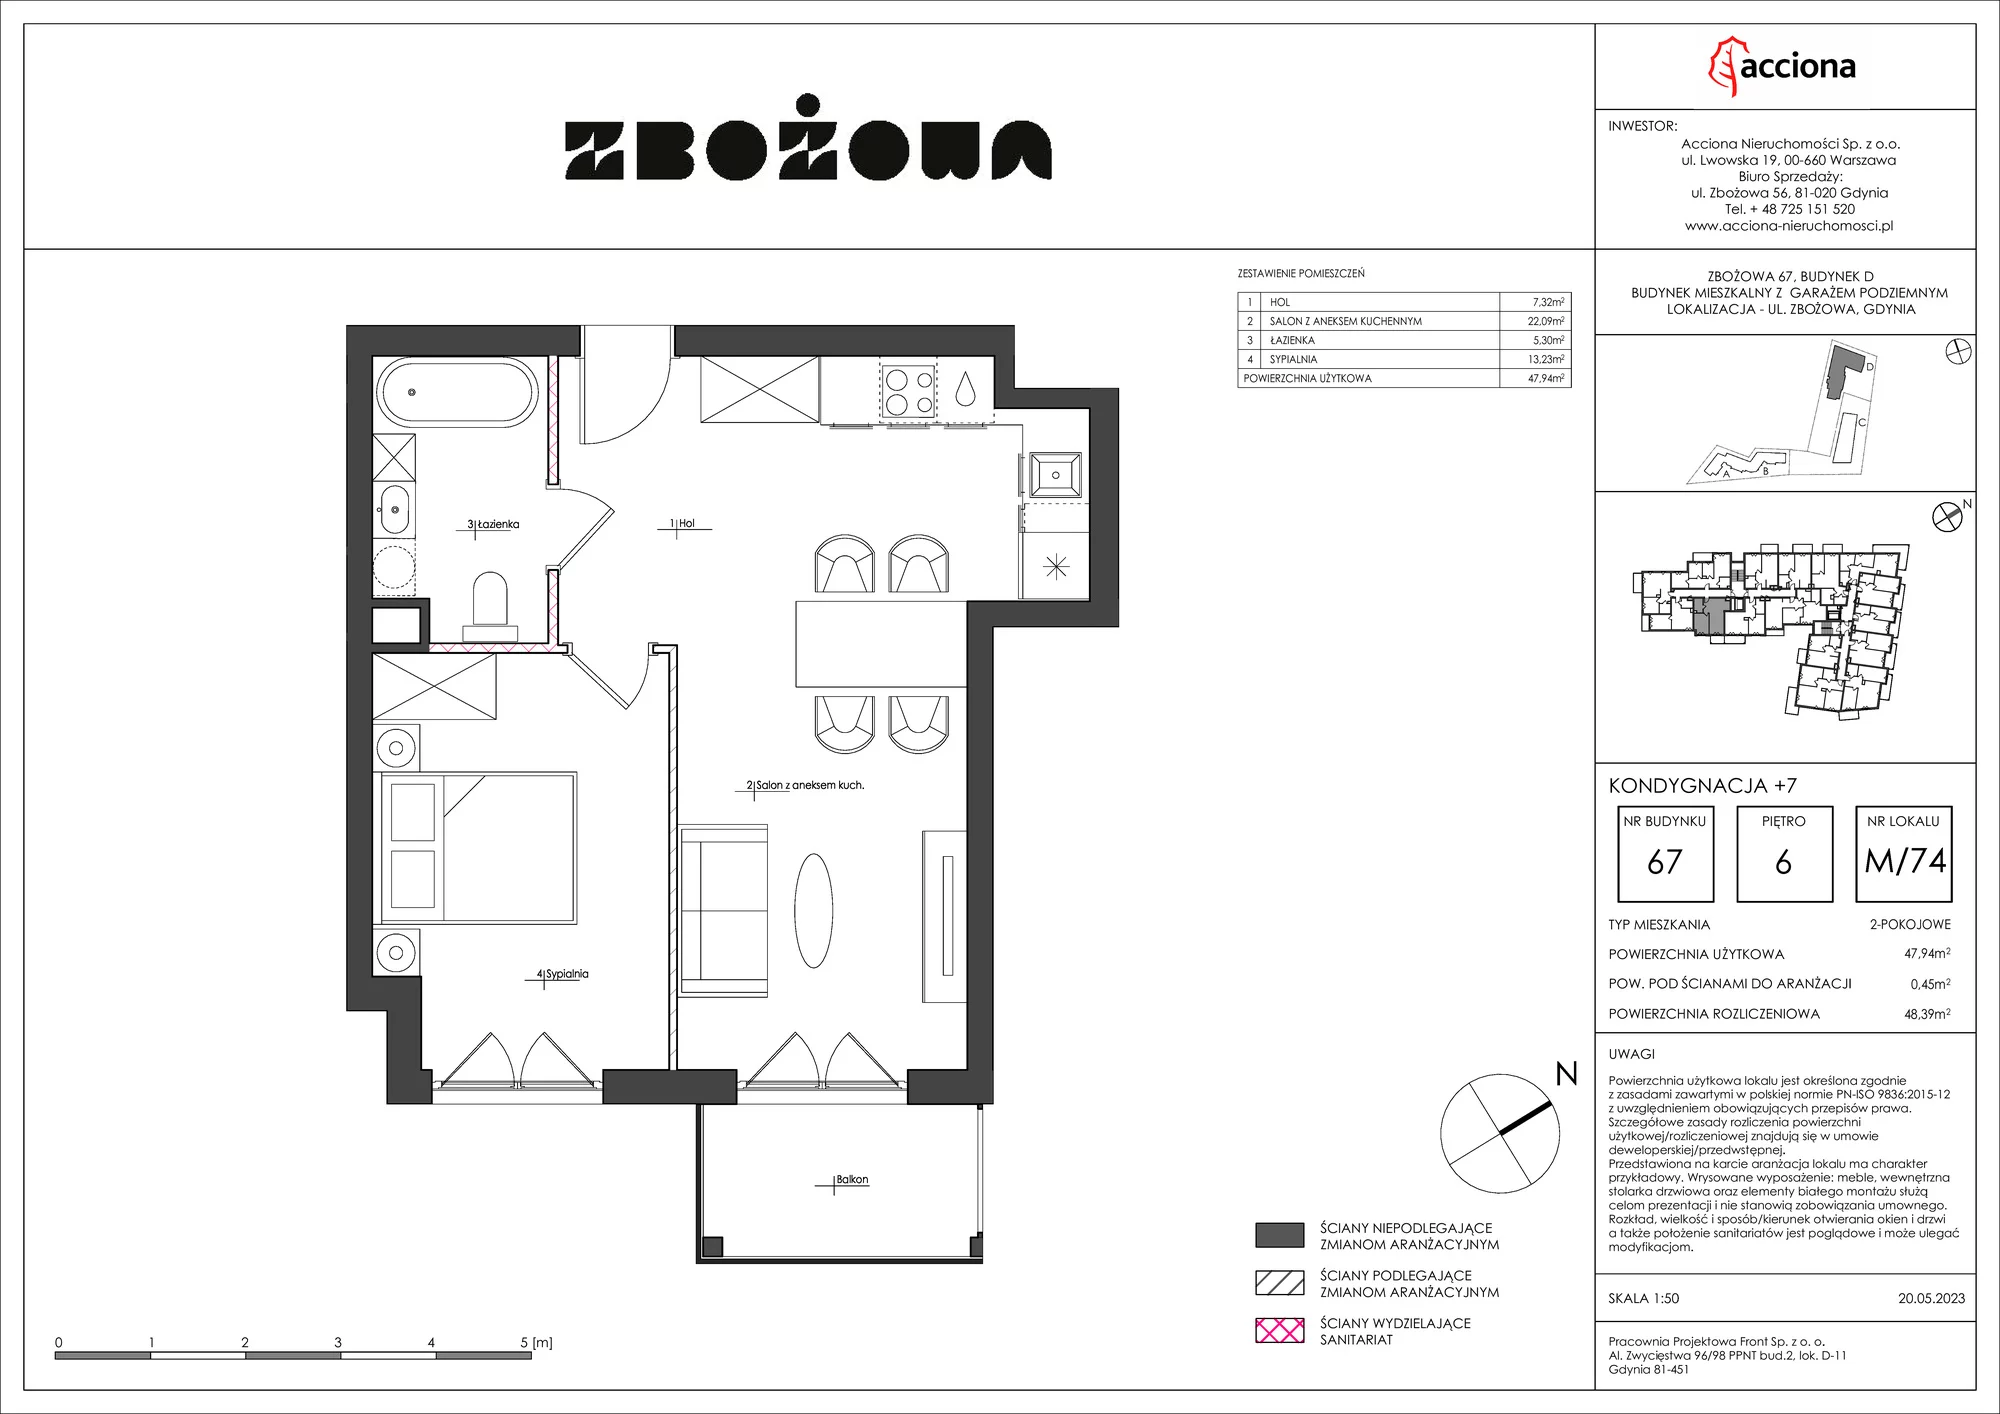 Mieszkanie 48,39 m², piętro 6, oferta nr 67.74, Zbożowa, Gdynia, Cisowa, ul. Zbożowa